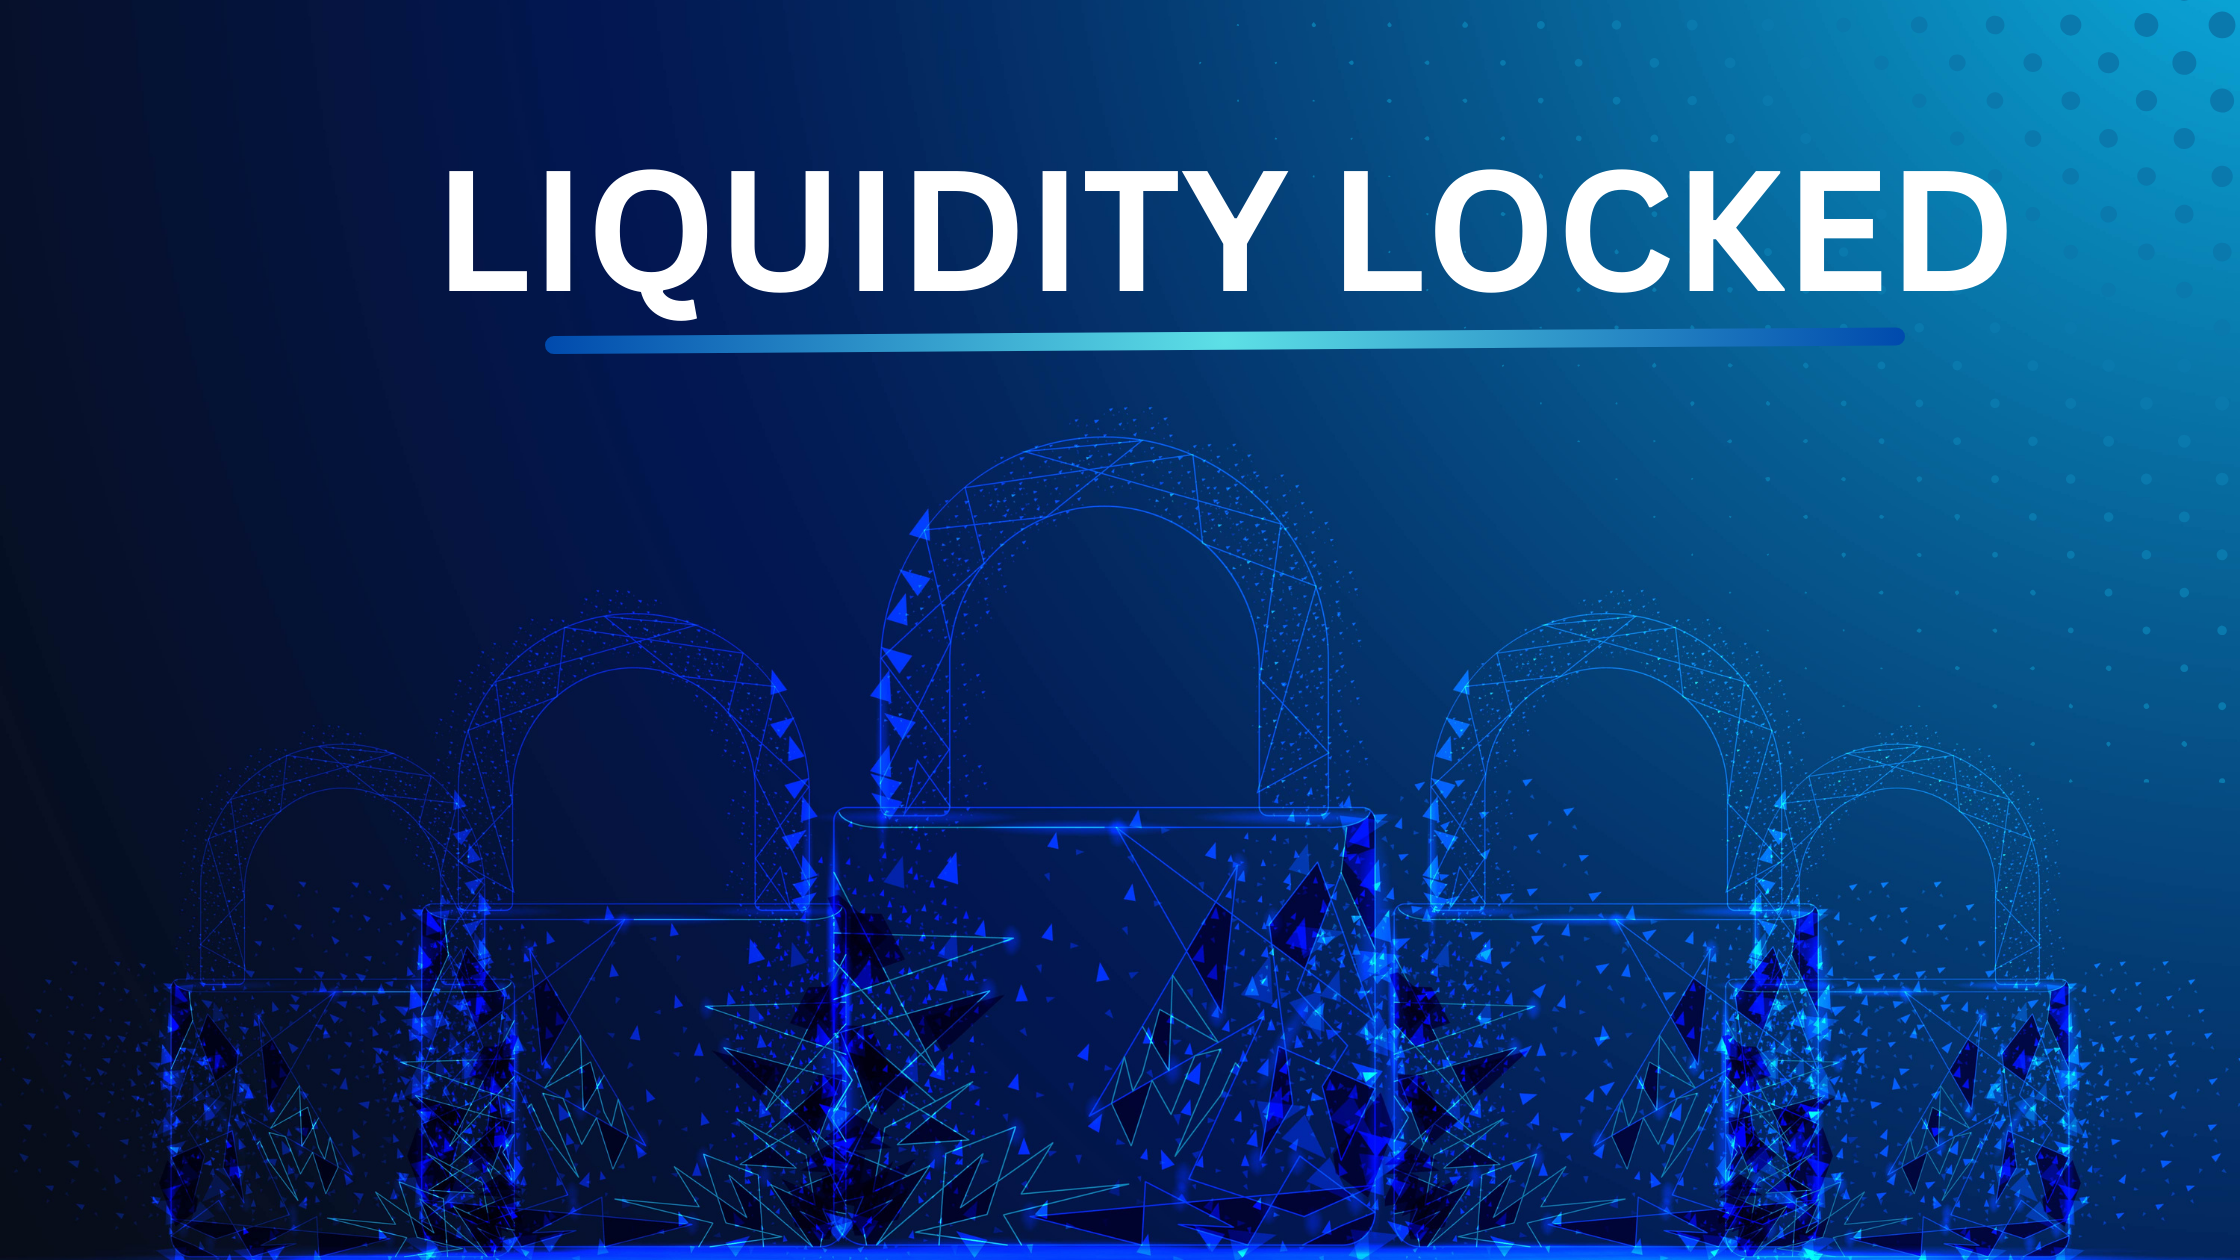 Co je likvidita zablokována v kryptoměně? Je likvidita uzamčení dobrá?